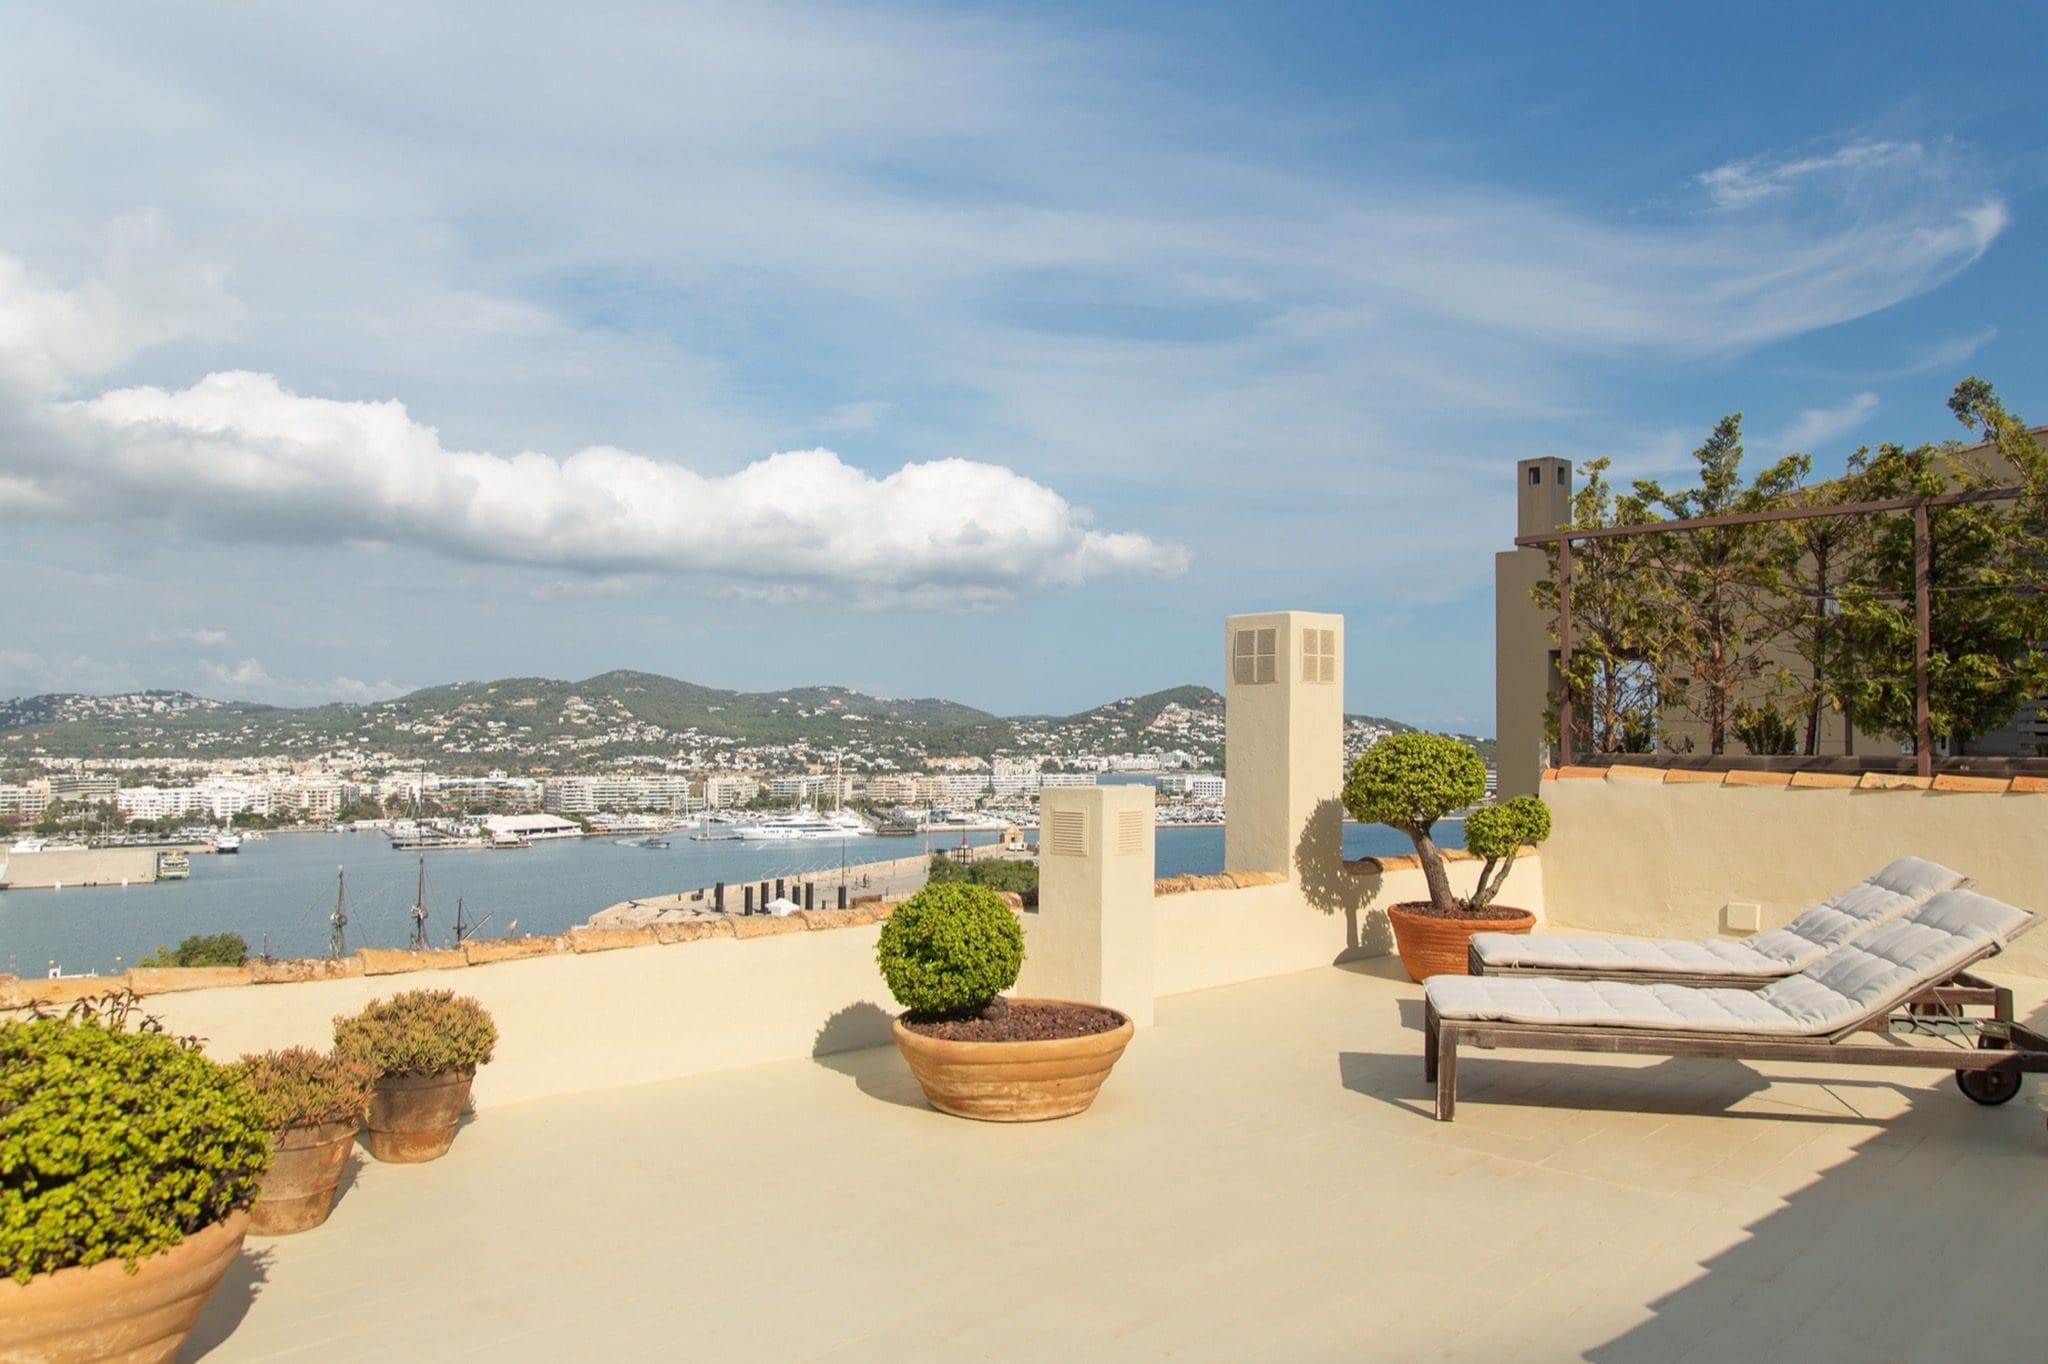 Villa Amatista Web 1 copy - Vilă din Ibiza aflată într-un sit UNESCO, la vânzare pentru 6,5 milioane de euro